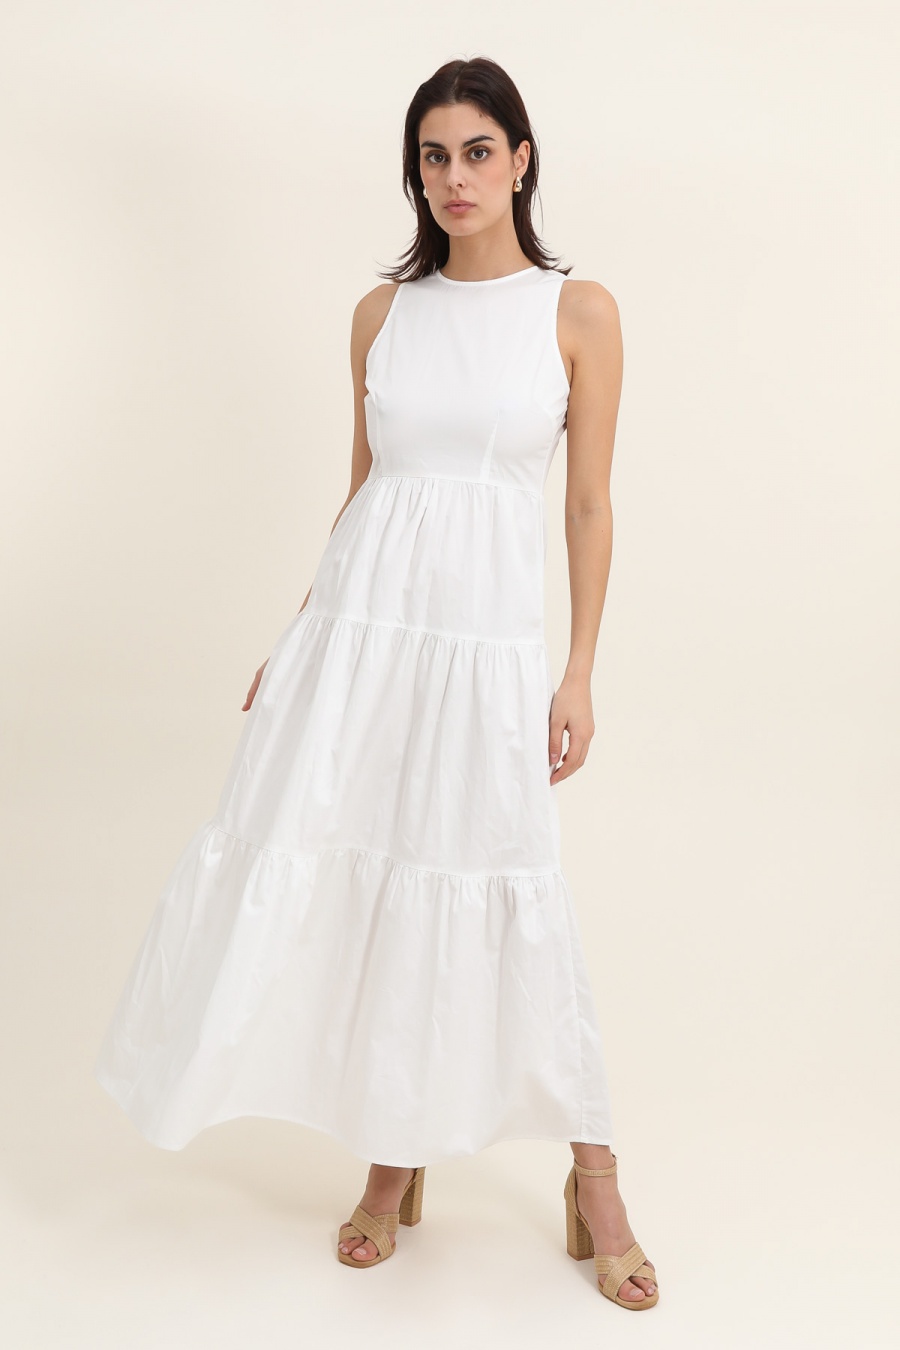 Robes longues Femme Blanc Daphnea 5310 #c Efashion Paris